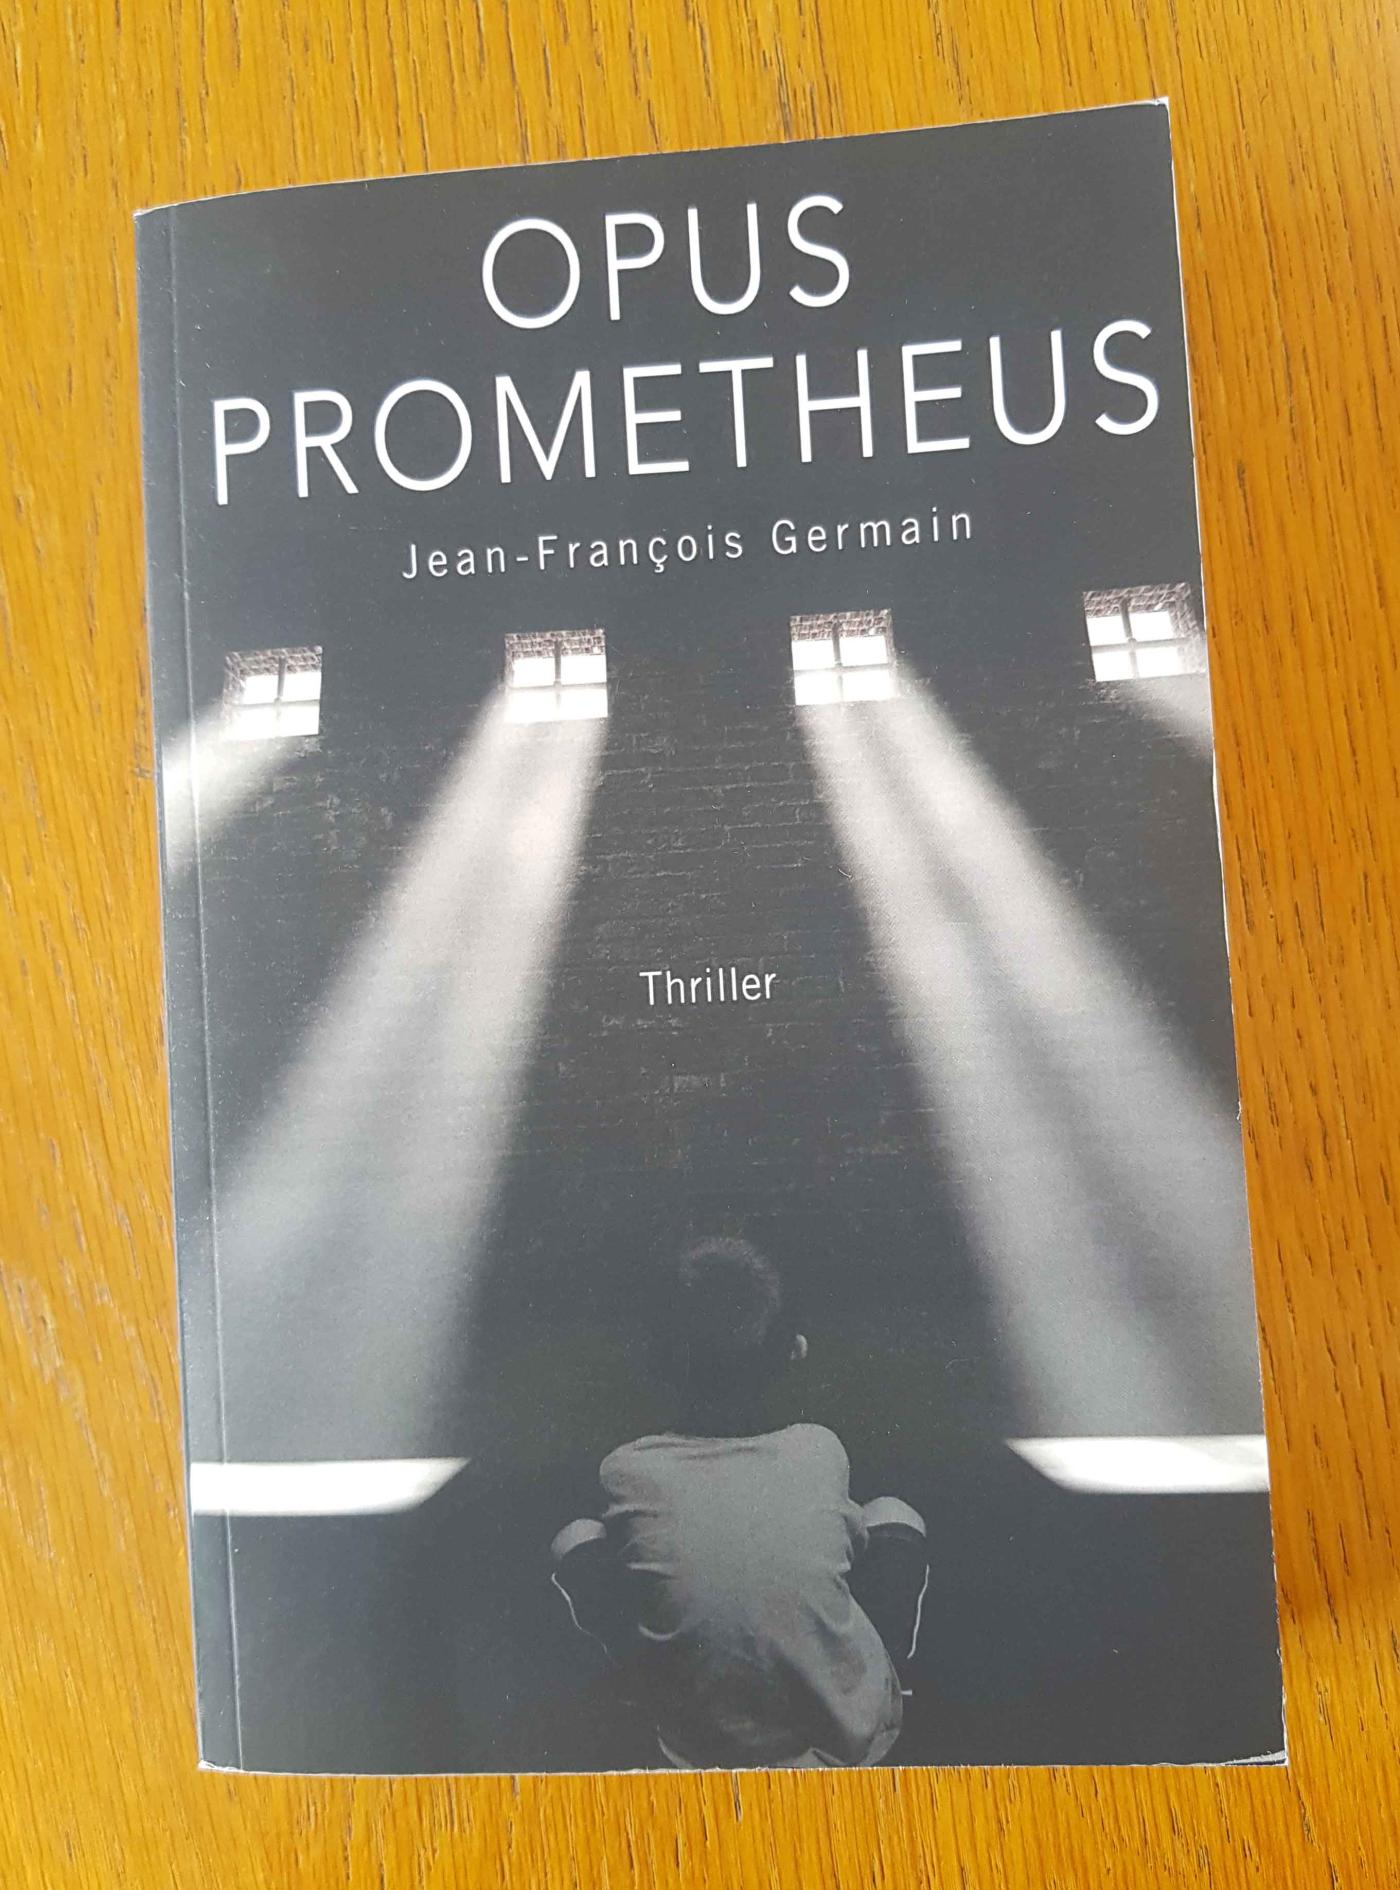 Des idées de lecture pour l'été - Opus prometheus – Jean-François Germain – 21.90 € - Librinova"